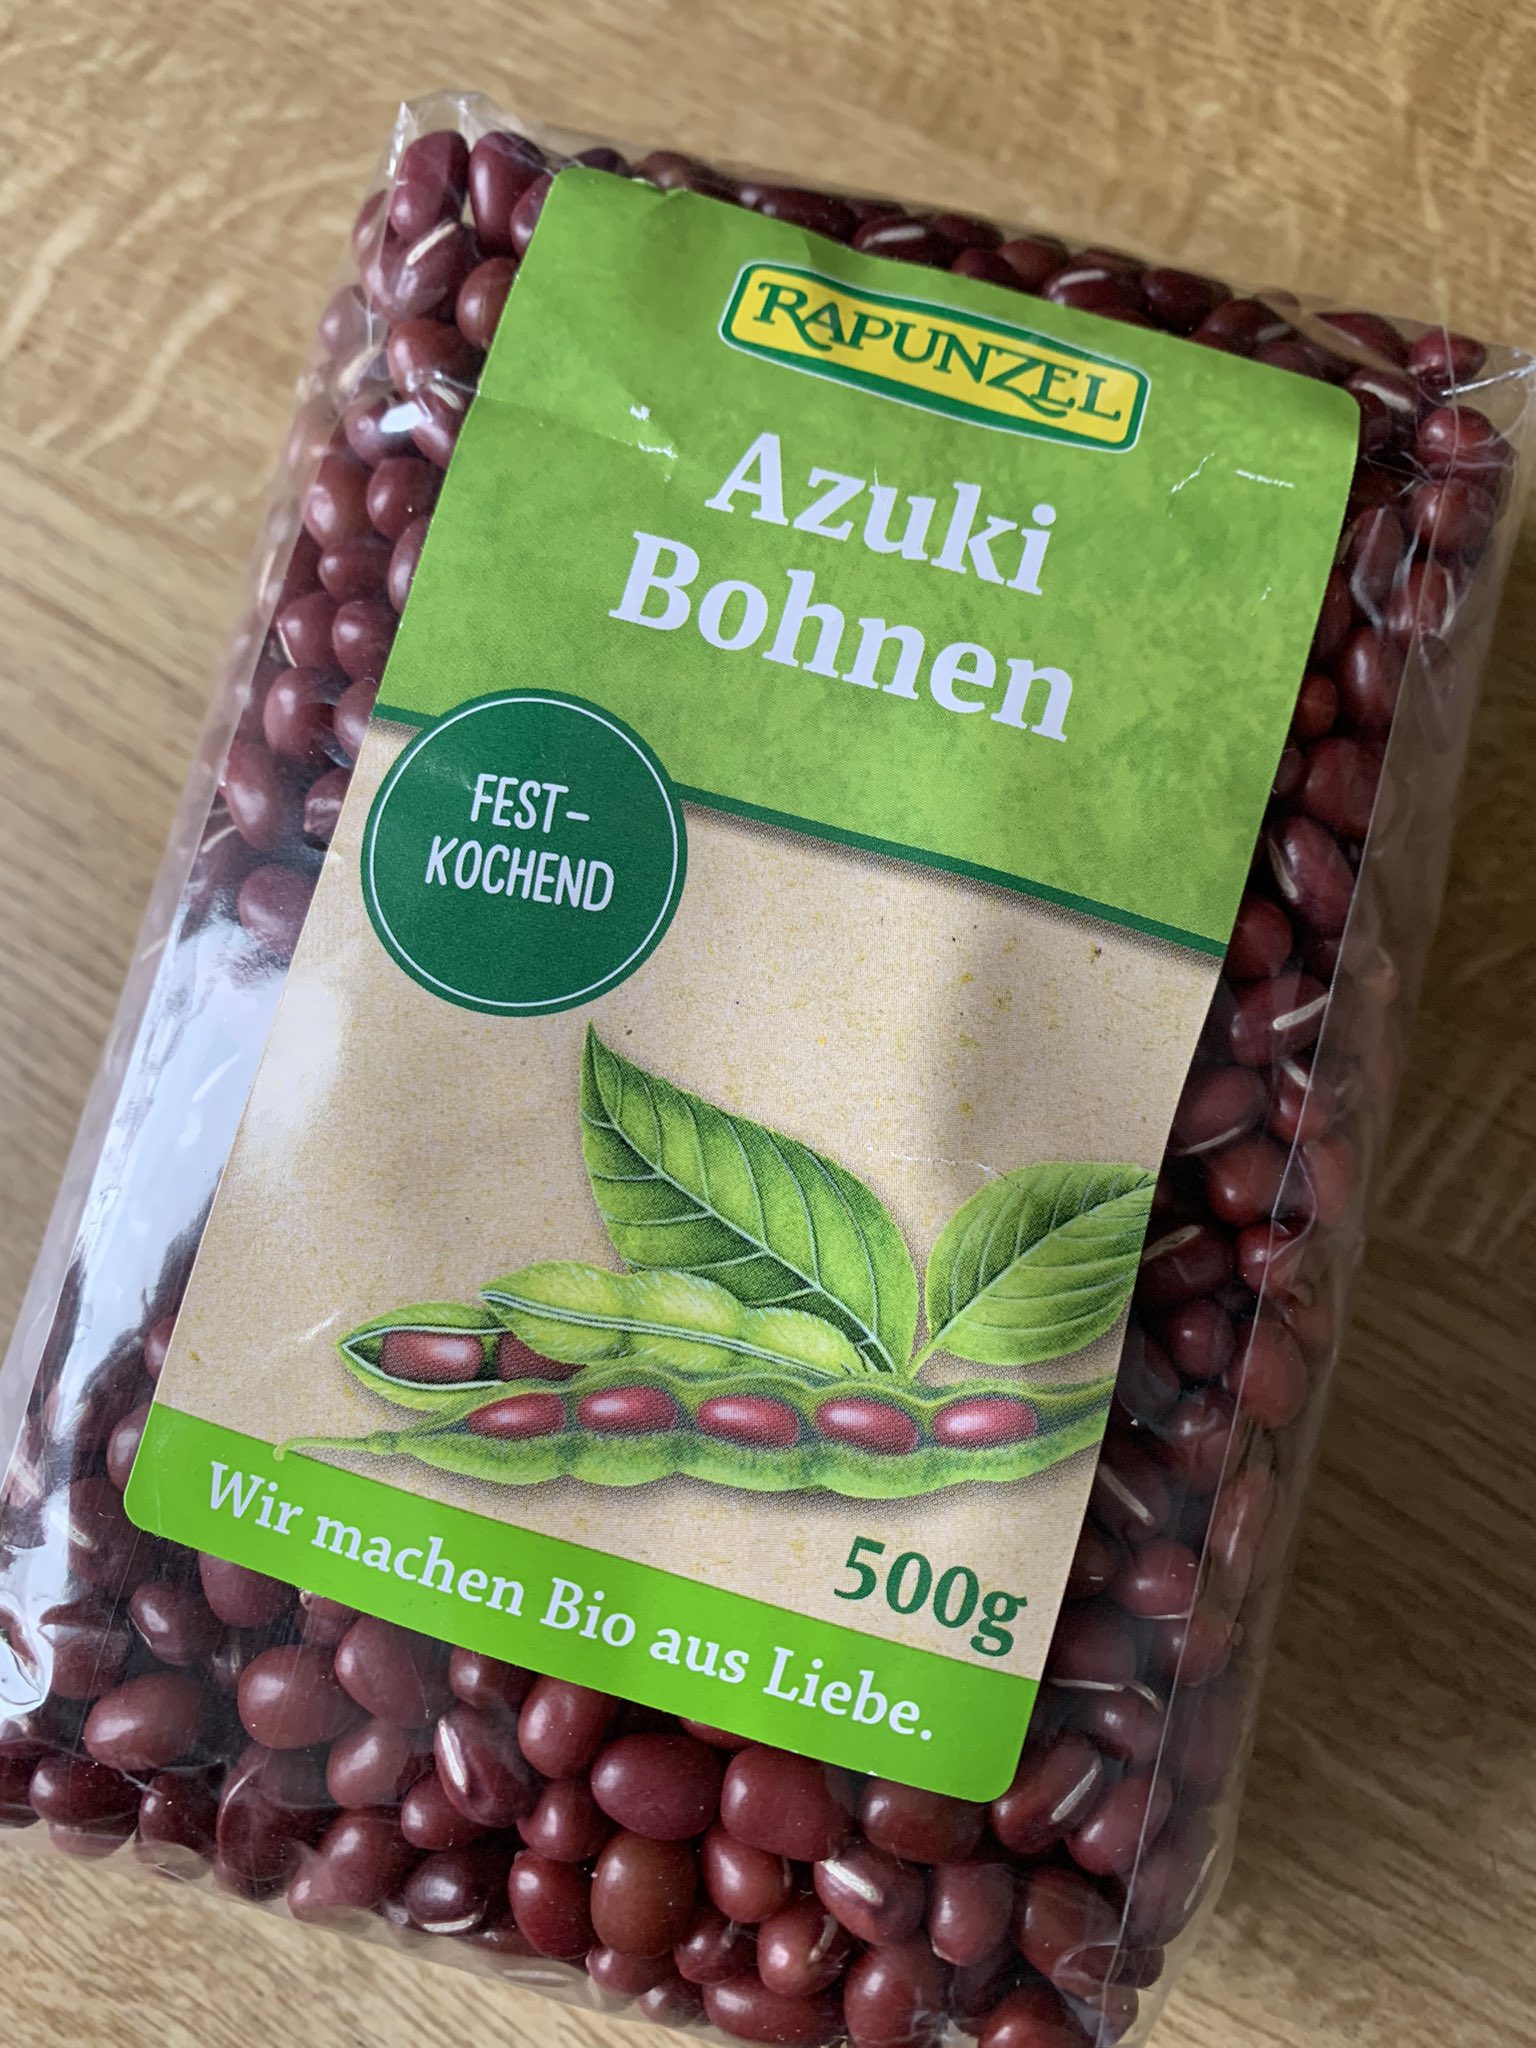 Nilo ドイツのオーガニックスーパーで売られている小豆 ドイツ人は絶対甘く炊いて食べたりしないと思いますが 試しにどんなものか 近日中に炊いてみたいと思います ドイツ暮らし オーガニック食品 小豆 あんこ大好き T Co Tfogbb6hvz